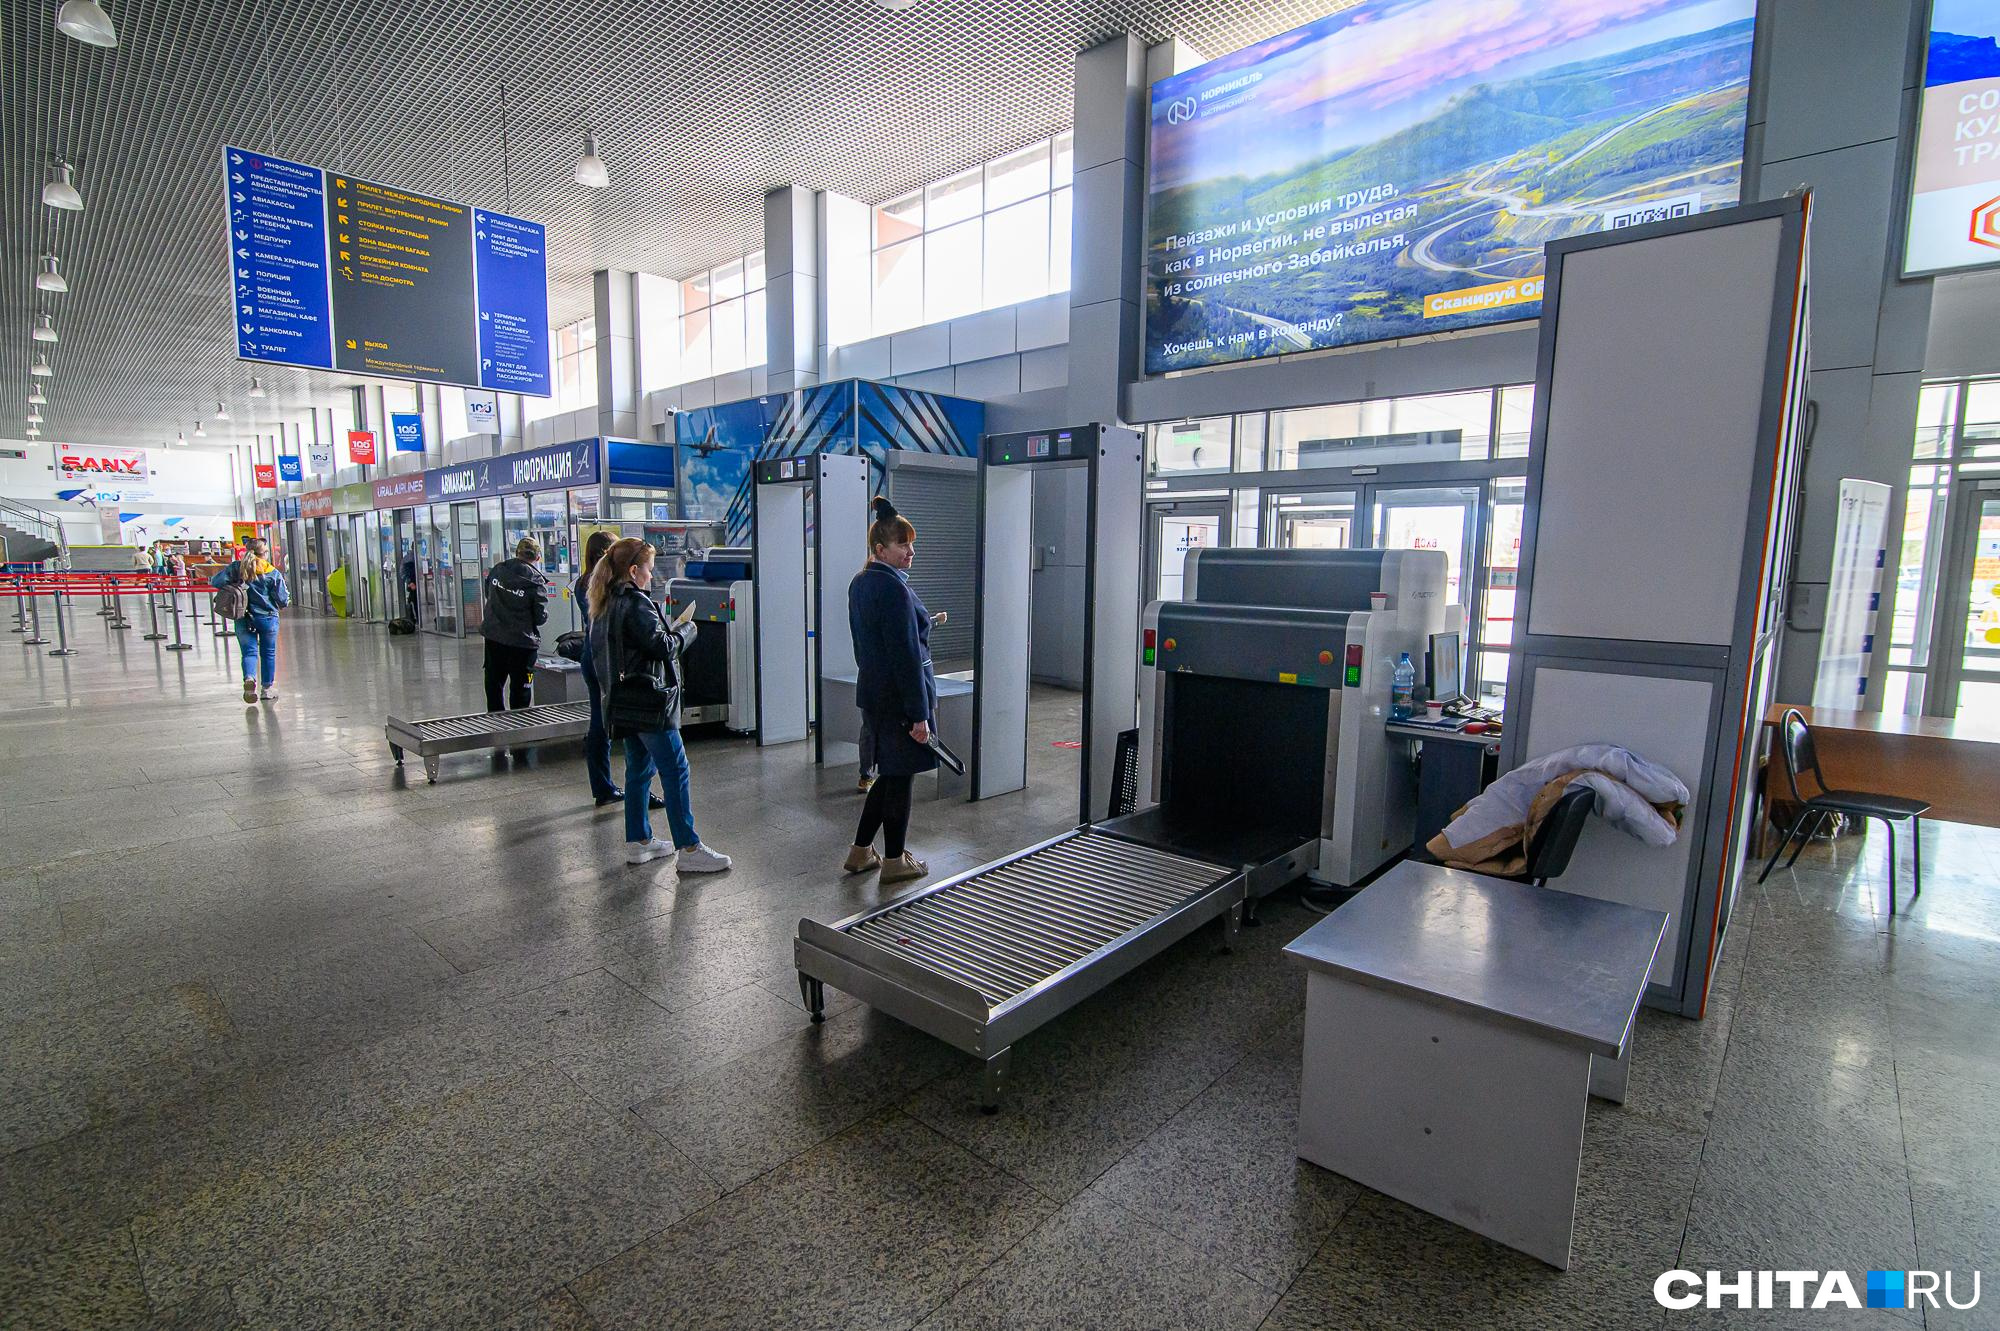 Тайну исчезновения телефона в аэропорту Читы раскрыли спустя почти год